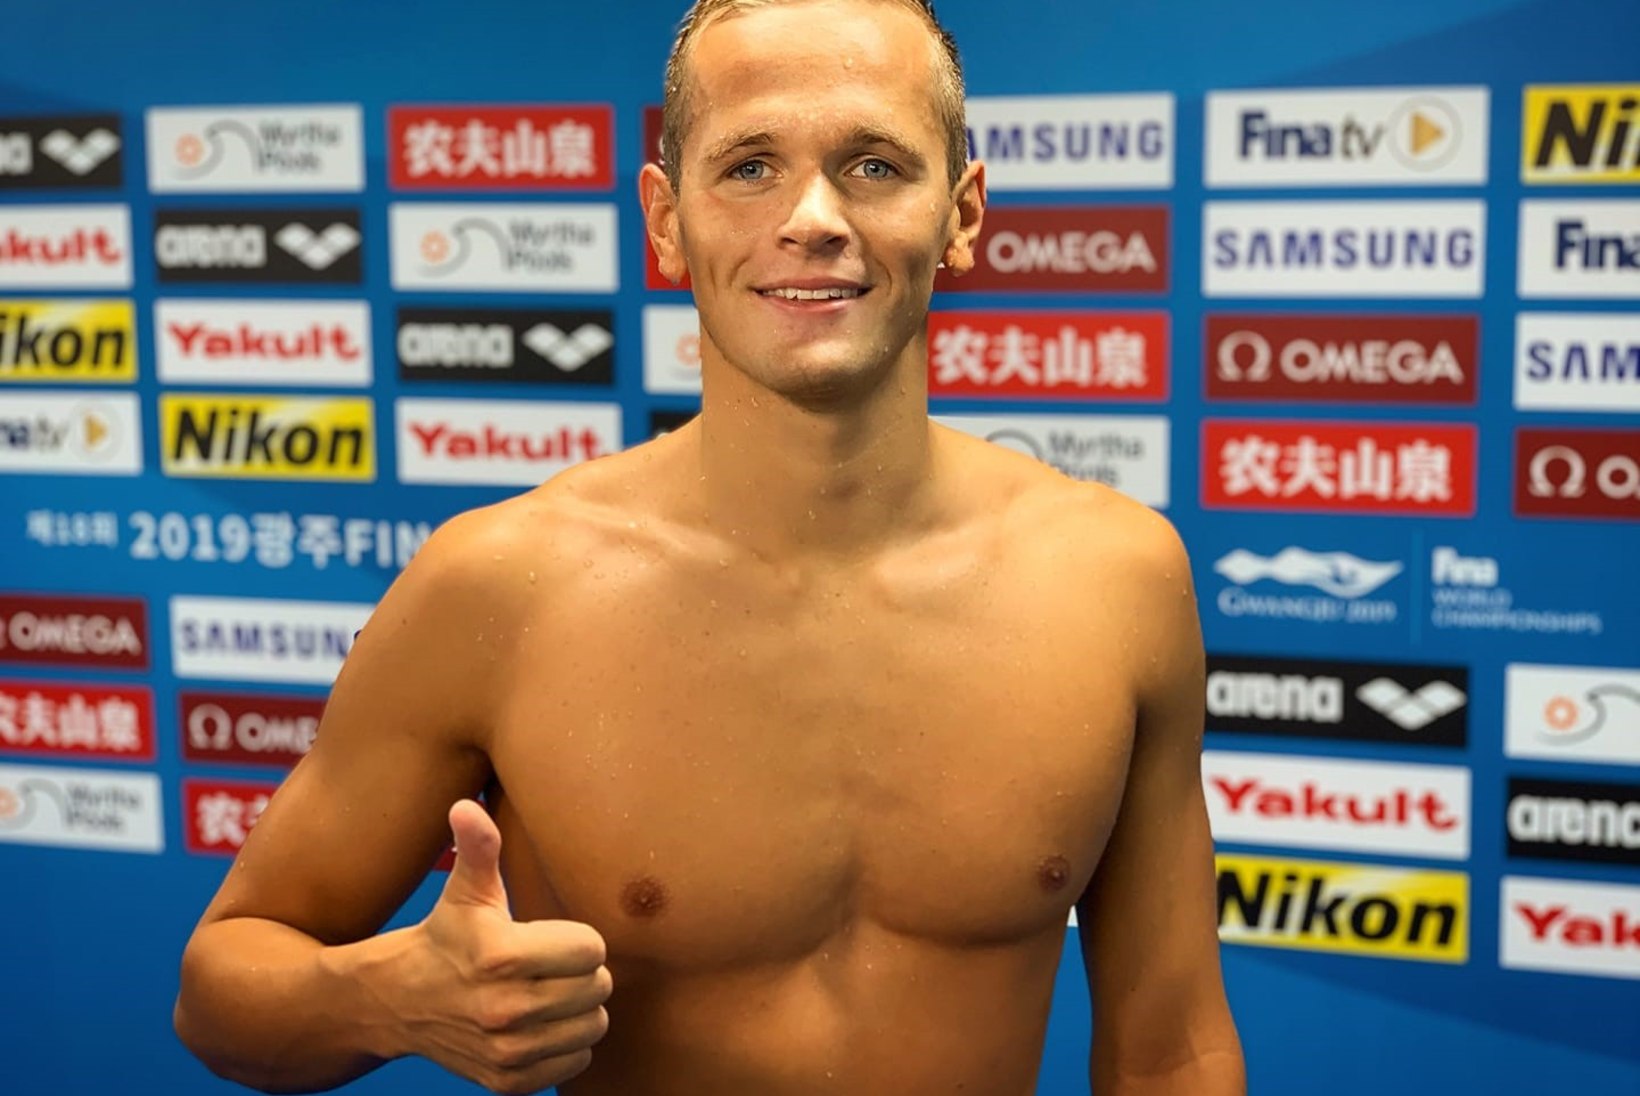 TUBLI! Zirk purustas rahvusvahelise ujumisliiga finaaletapil kaks Eesti rekordit